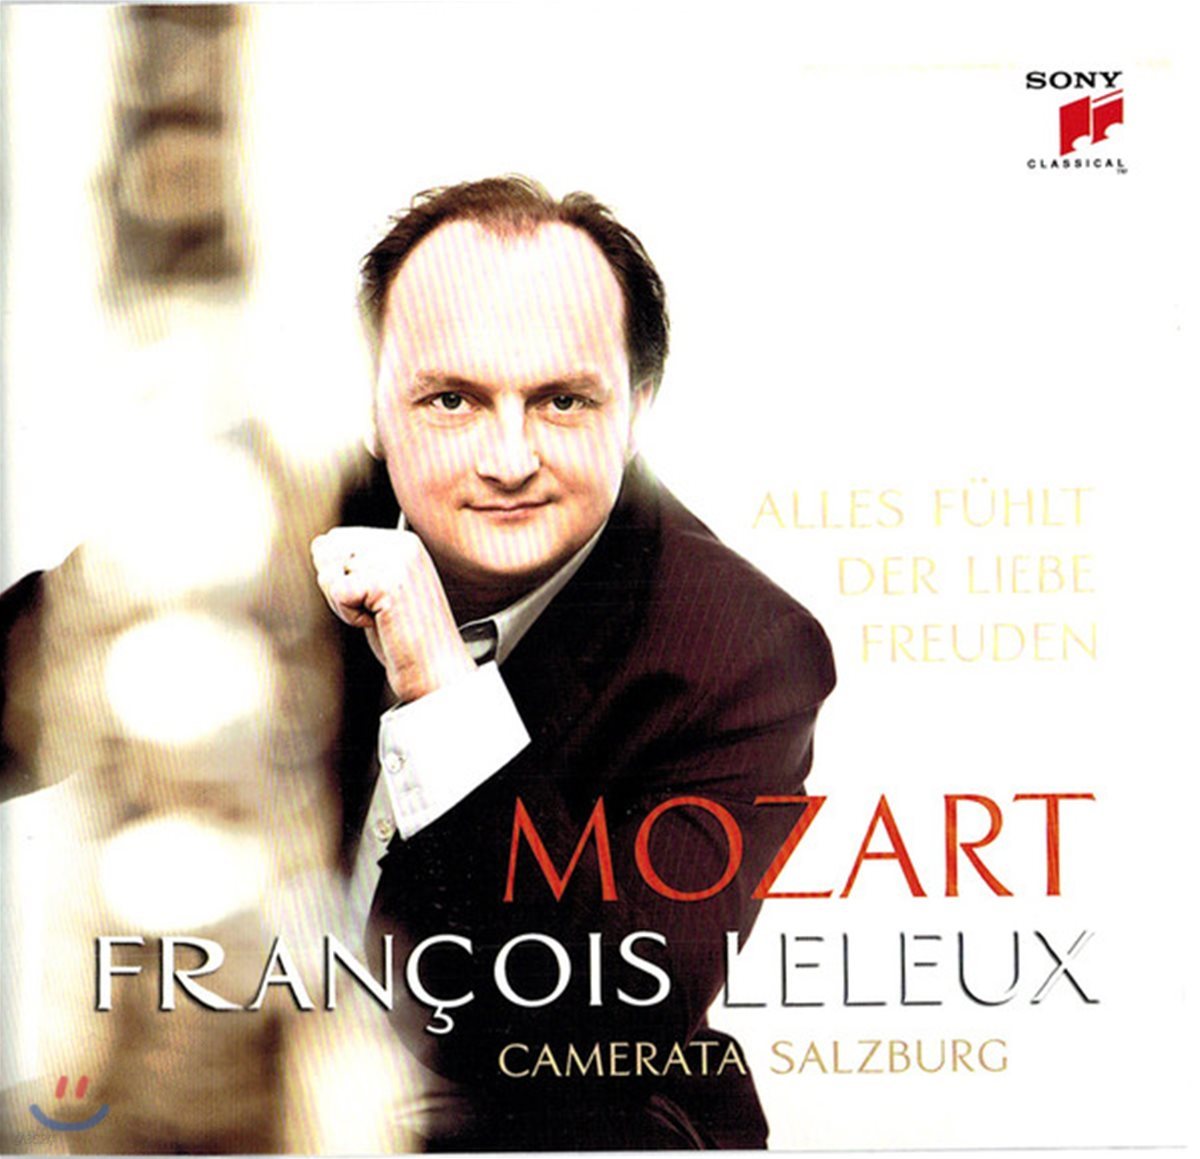 Francois Leleux 모차르트: 오보에와 오케스트라를 위한 작품집